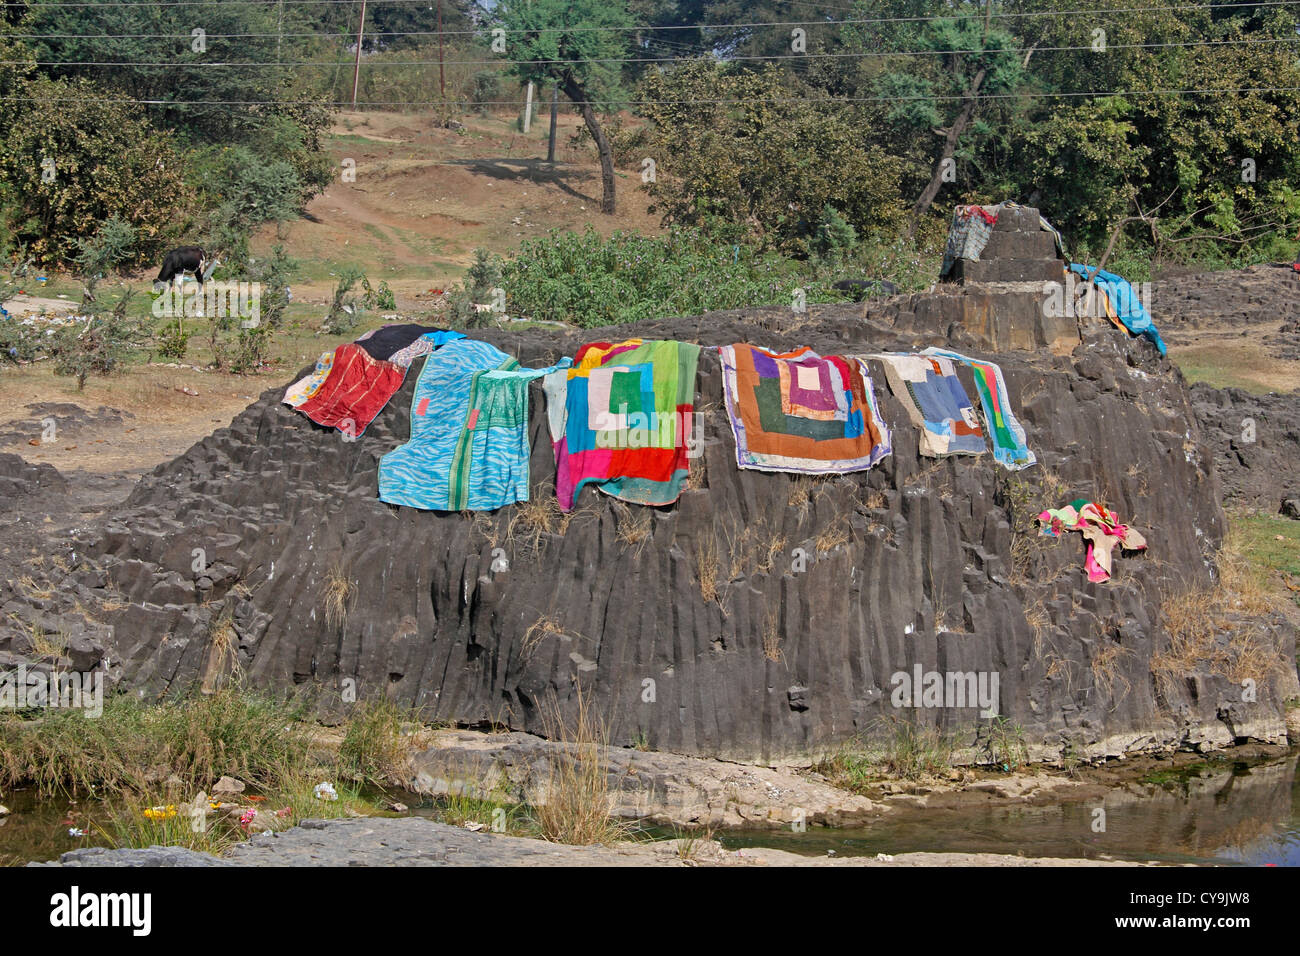 Los paños colgados en tendedero, India Foto de stock